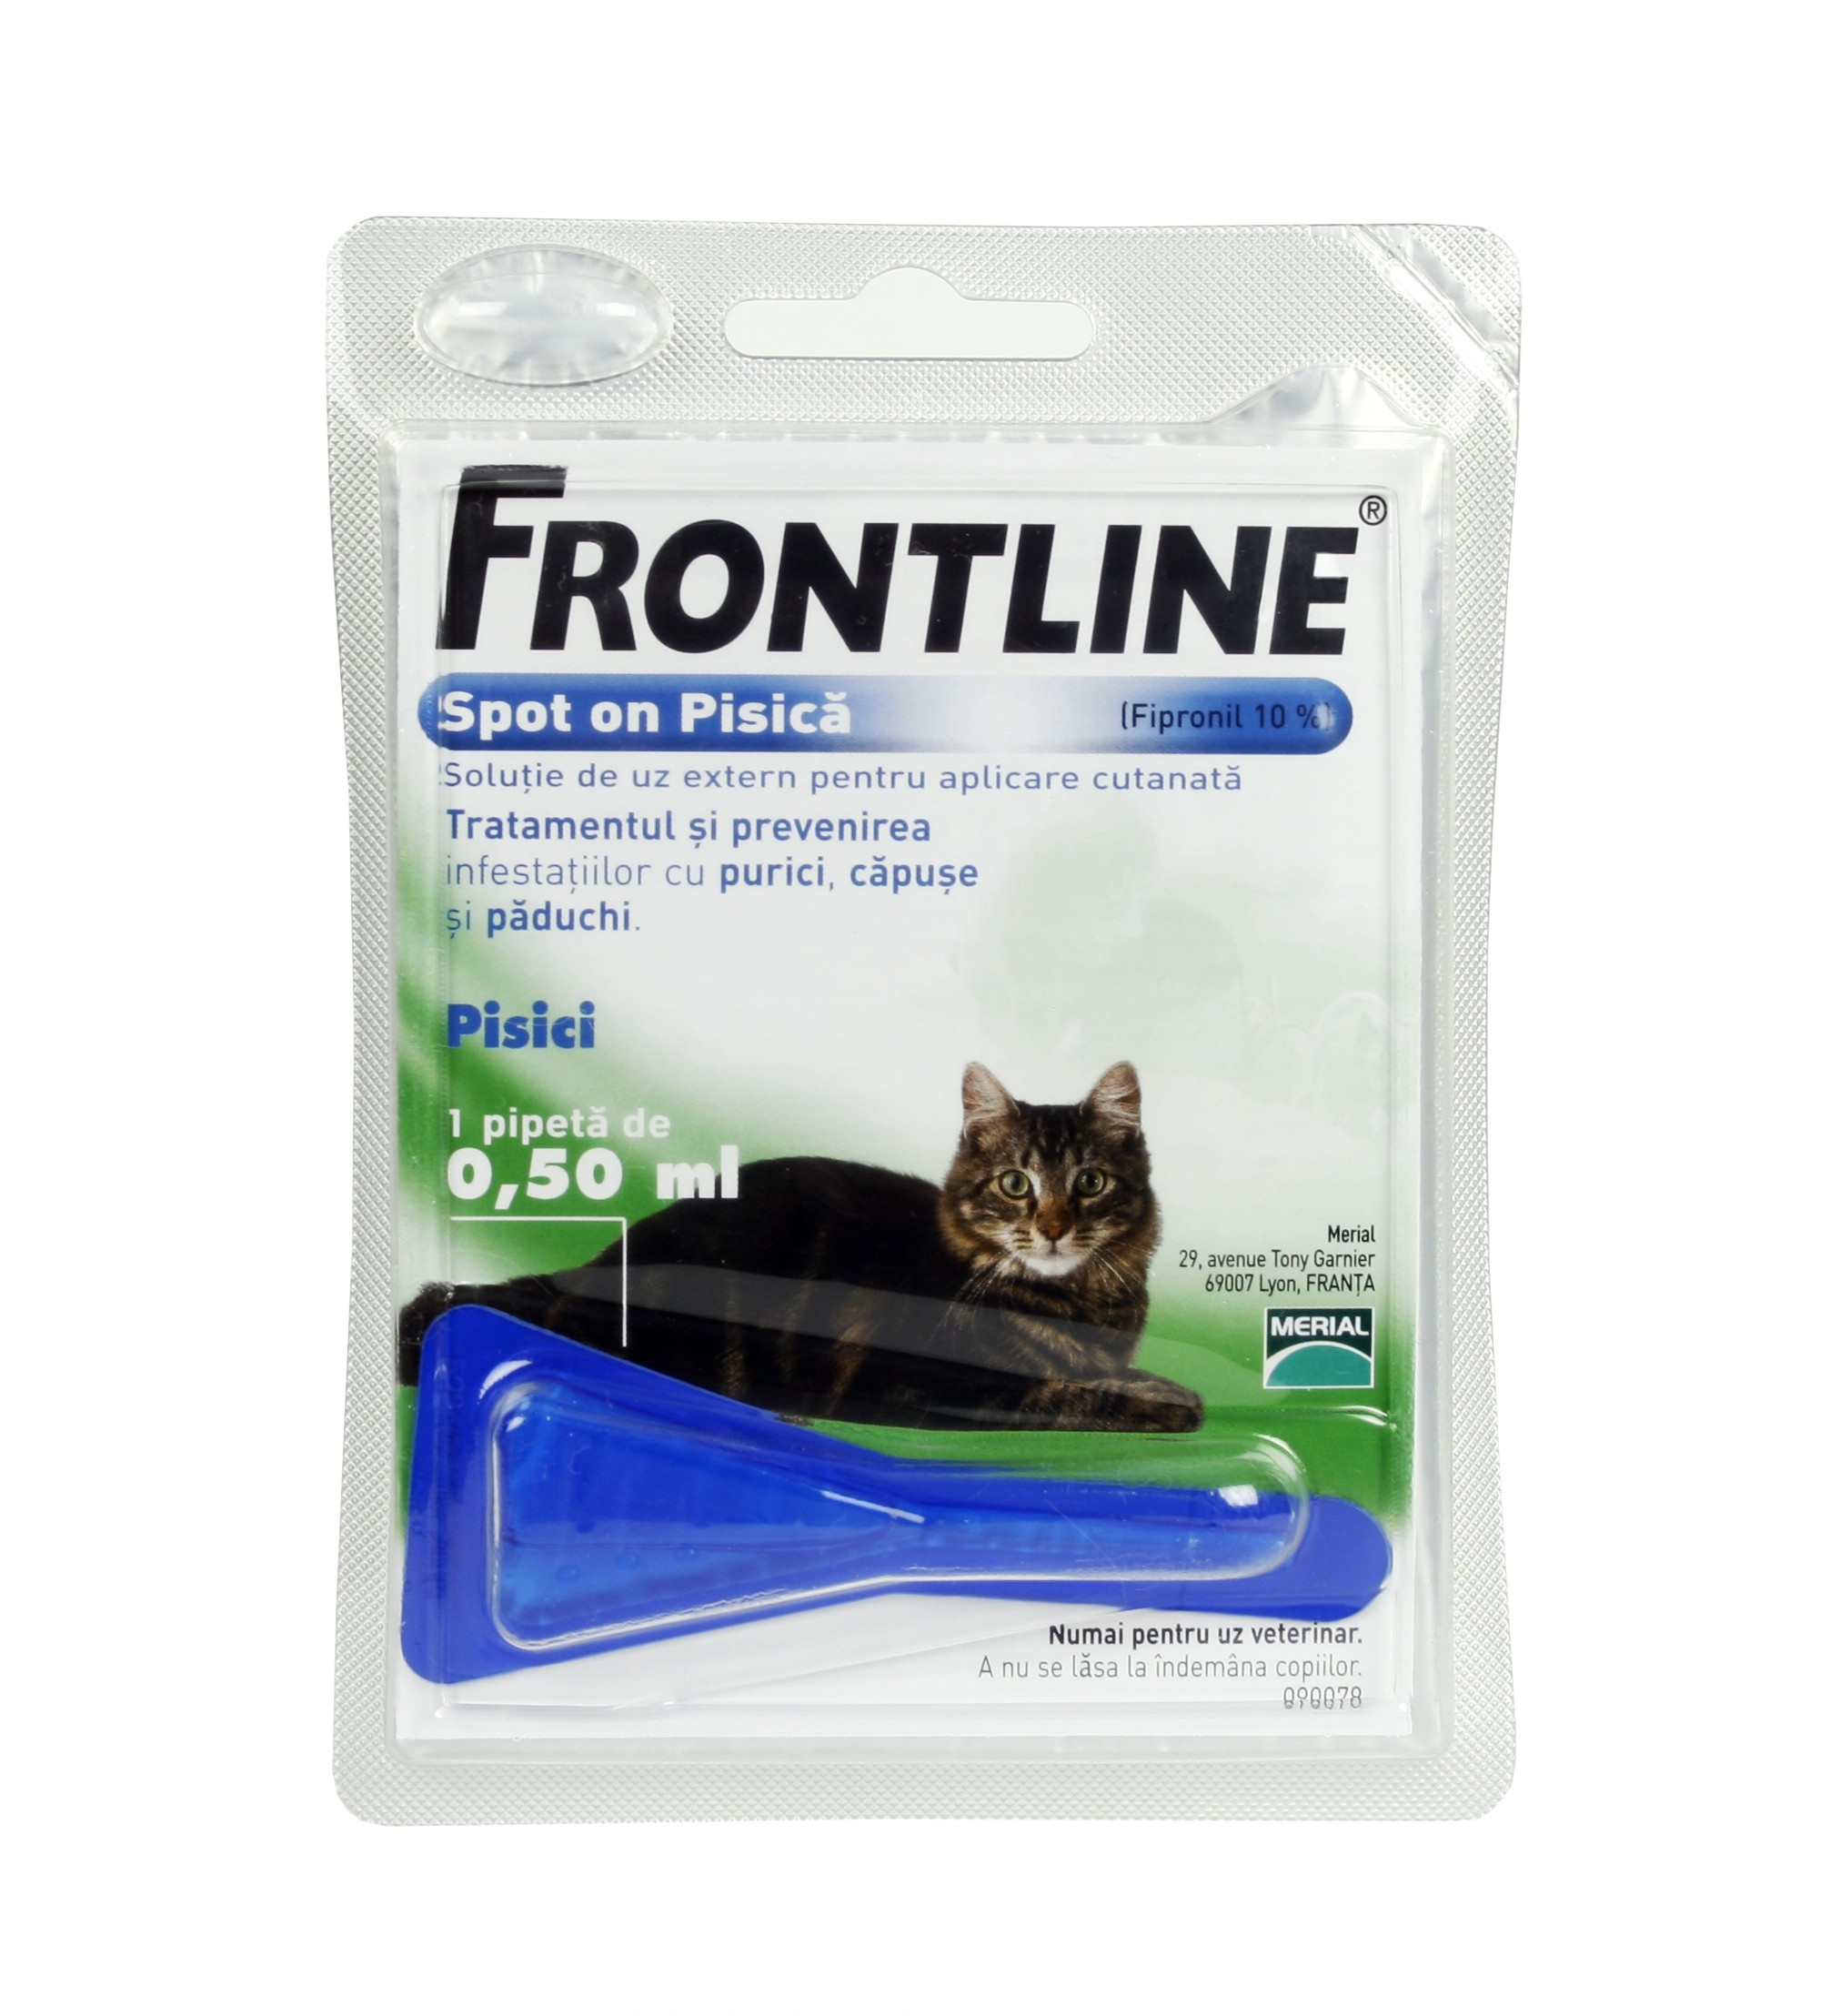 Frontline Spot On Pisica – 1 Pipeta Antiparazitara Merial imagine 2022